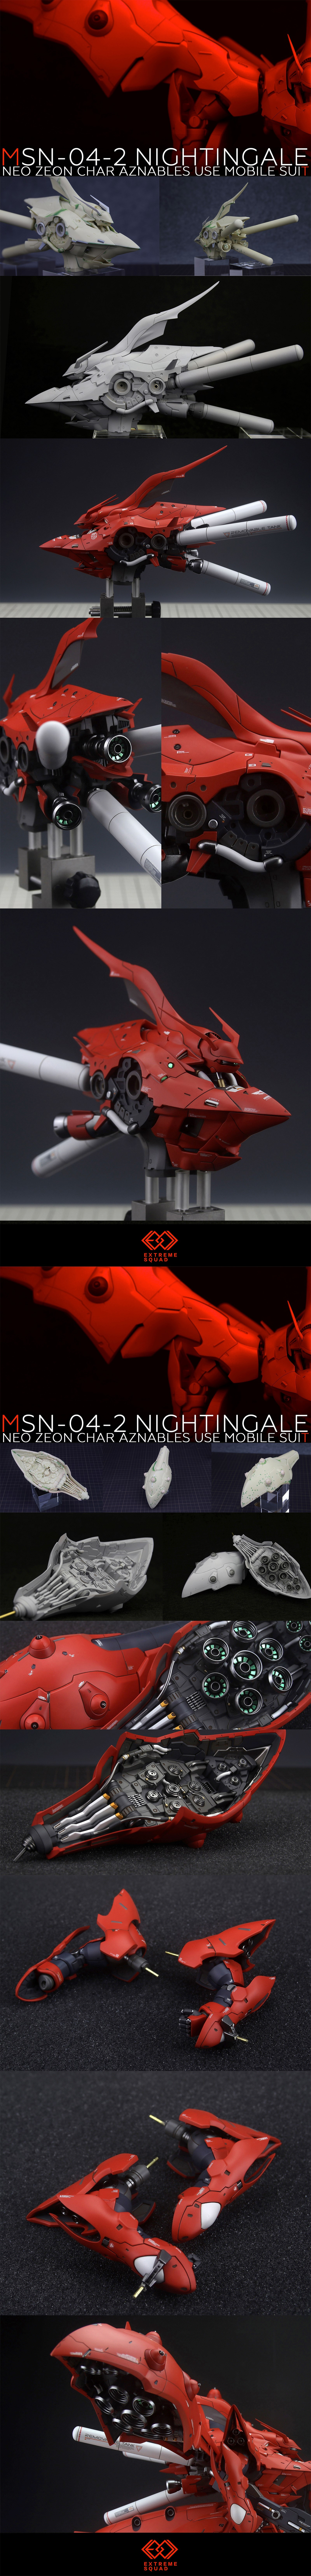 G338_Extreme_Squad_Nightingale_029.jpg